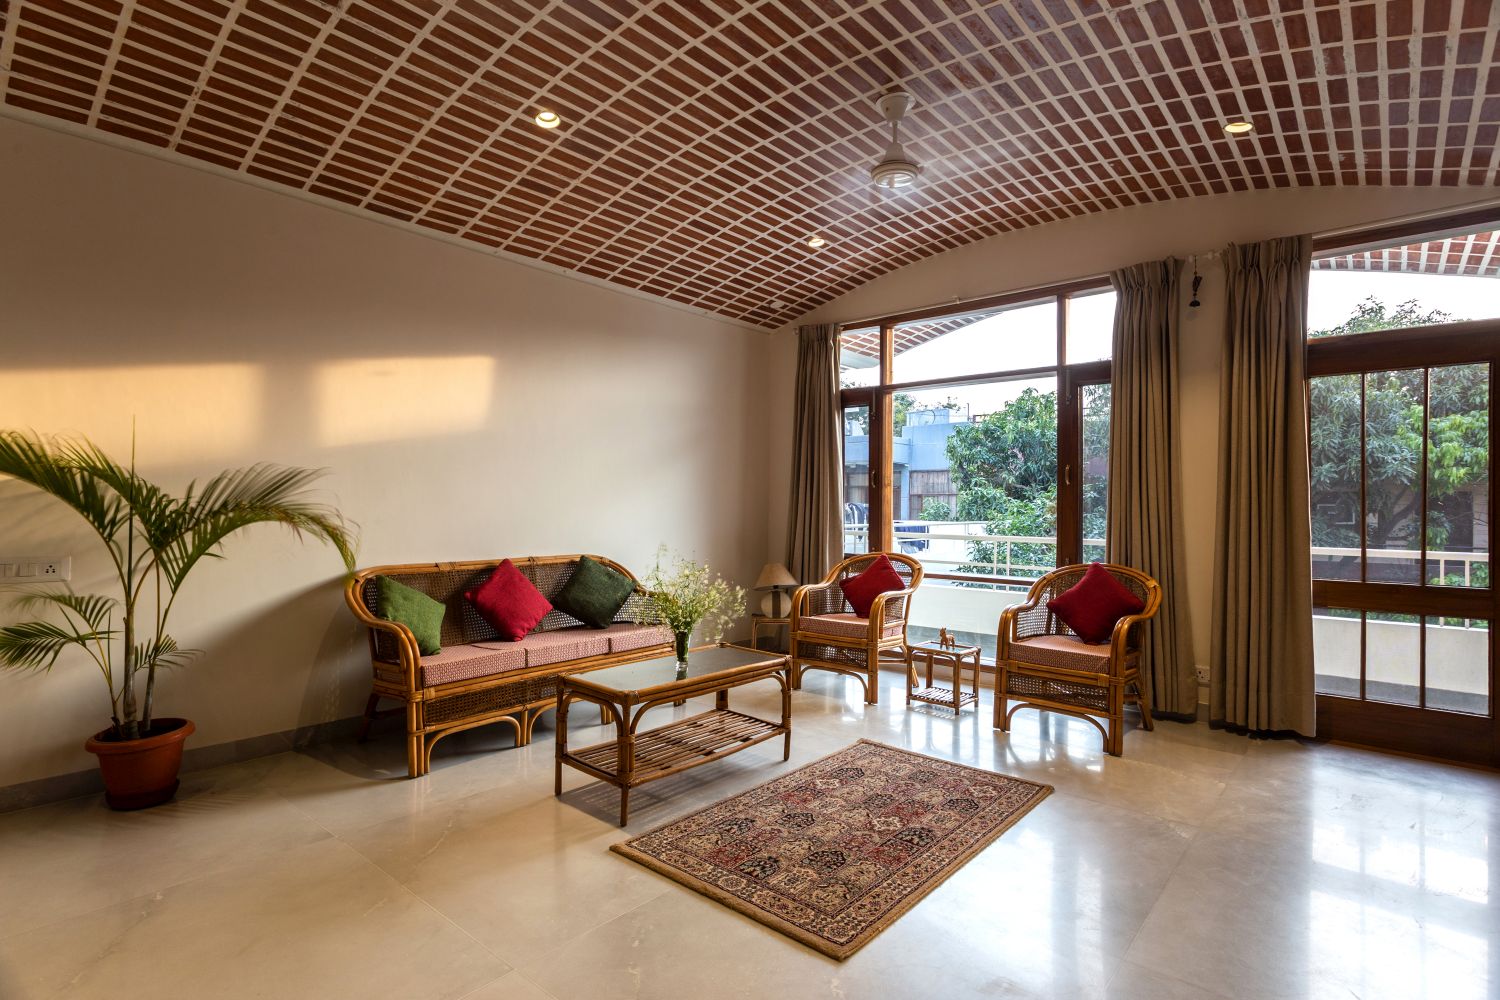 Residence 2105, Chandigarh, by Studio Mohenjodaro 12